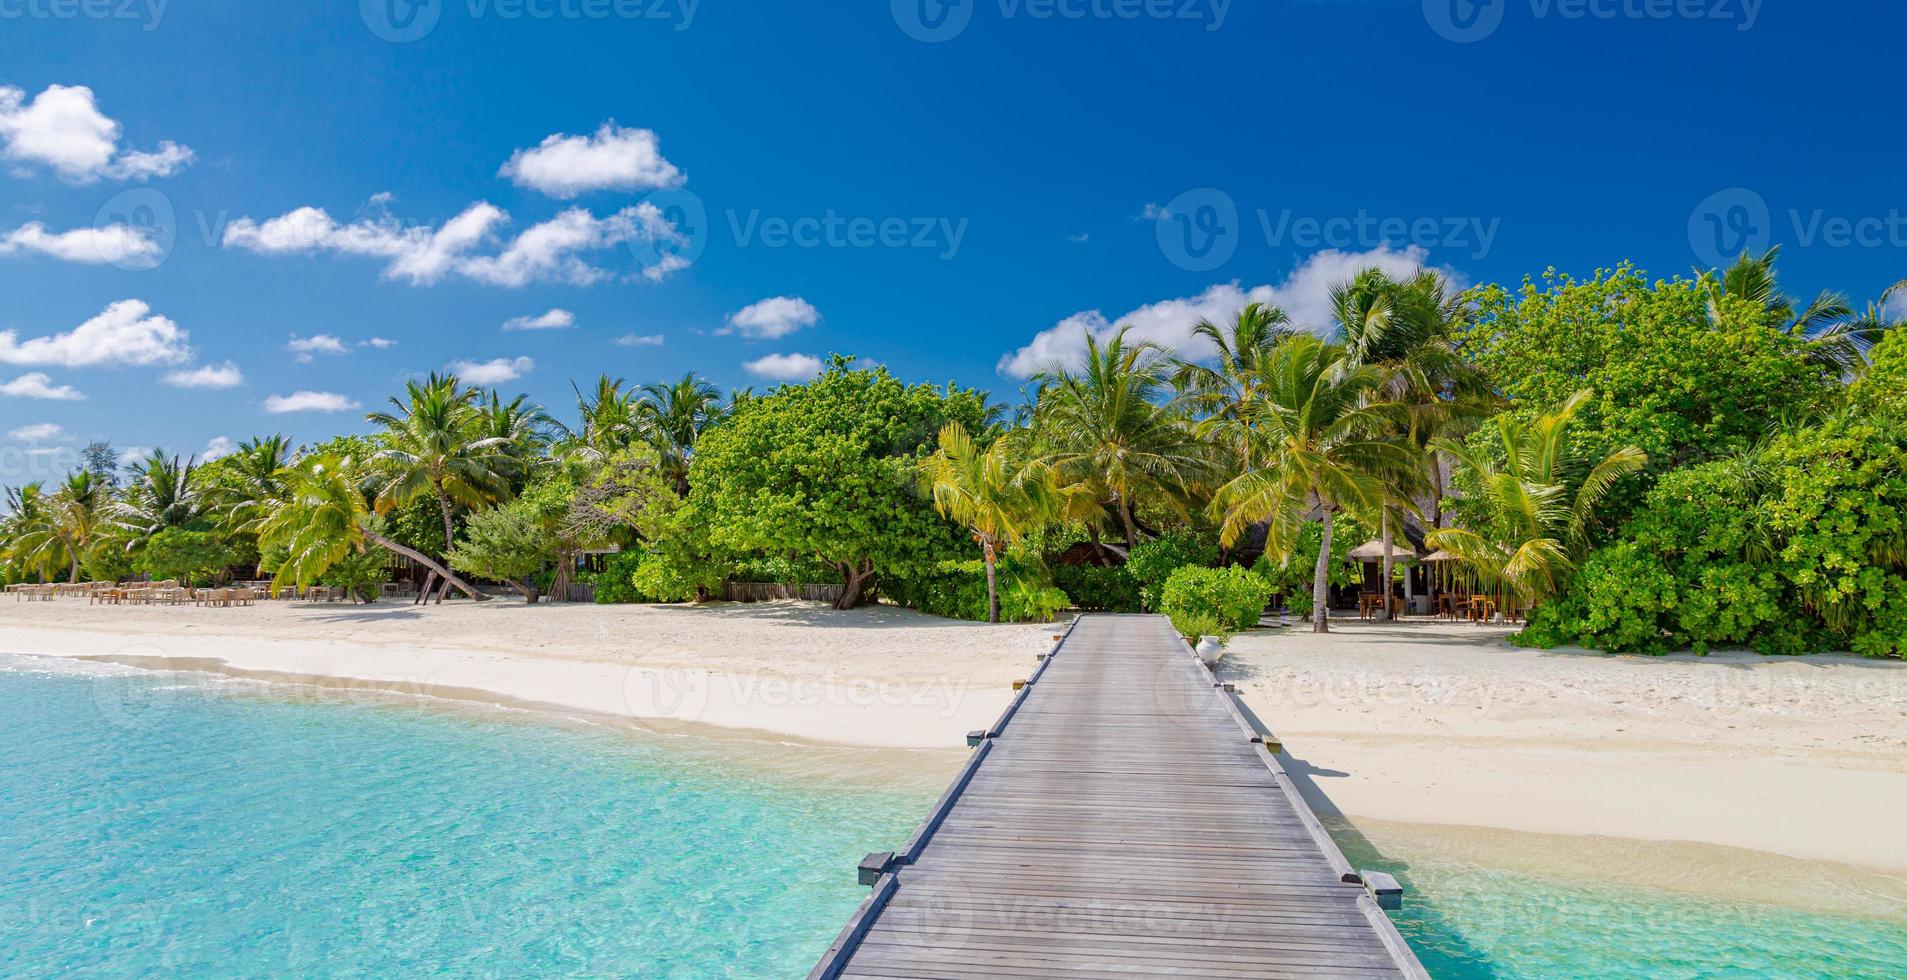 erstaunliche Panoramalandschaft des Strandes der Malediven. tropische Strandlandschaft Seelandschaft, Holzsteg des luxuriösen Wasservilla-Resorts. luxuriöser Reisezielhintergrund für Sommerurlaub und Urlaubskonzept foto